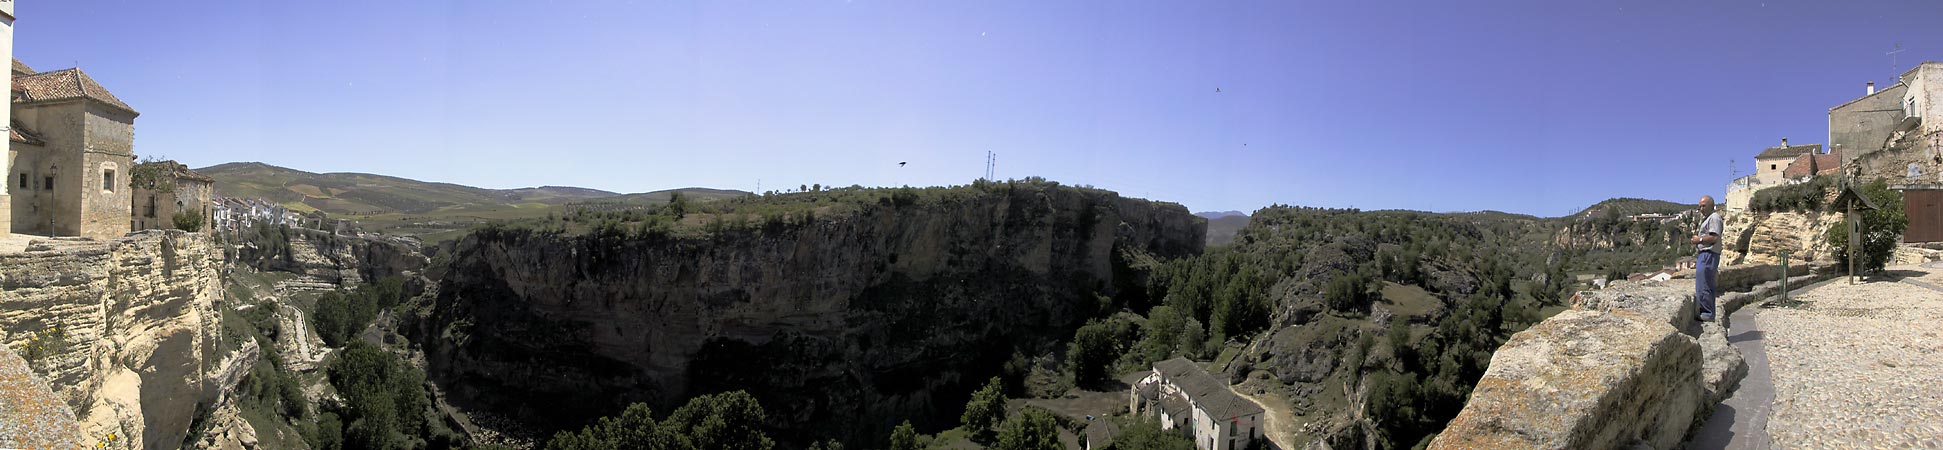 Witte loodrechte rots aan de kant van het stadje; loodrechte grijze rots aan de overkant, bomen in de kloof